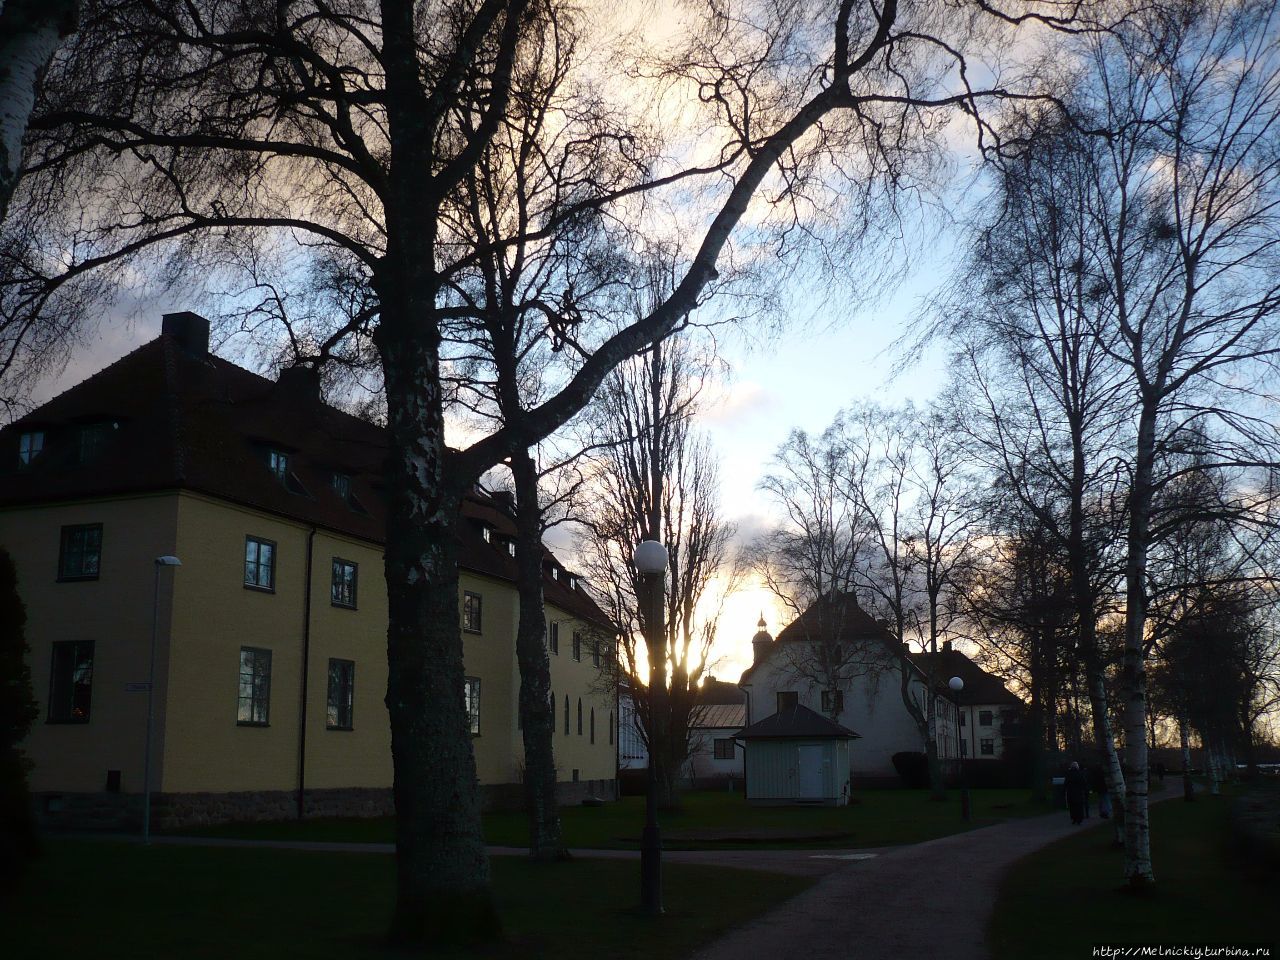 Три часа в городе святой Бригитты Вадстена, Швеция